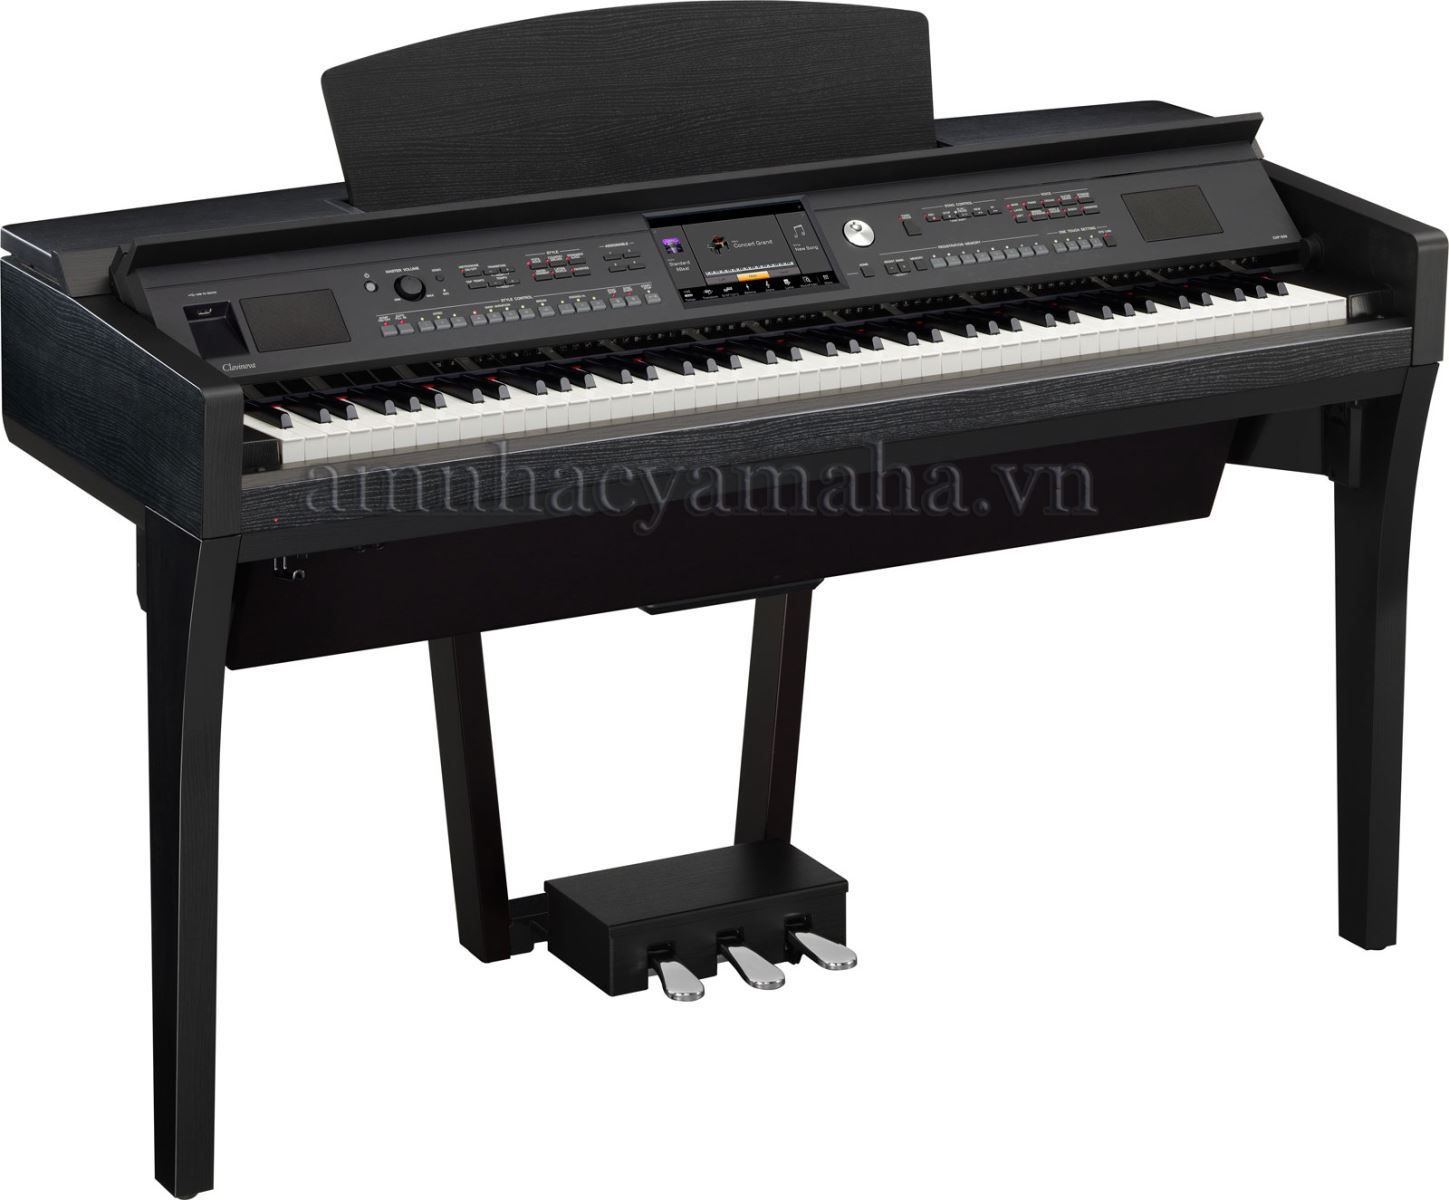 Đàn Piano Kỹ thuật số CVP-609